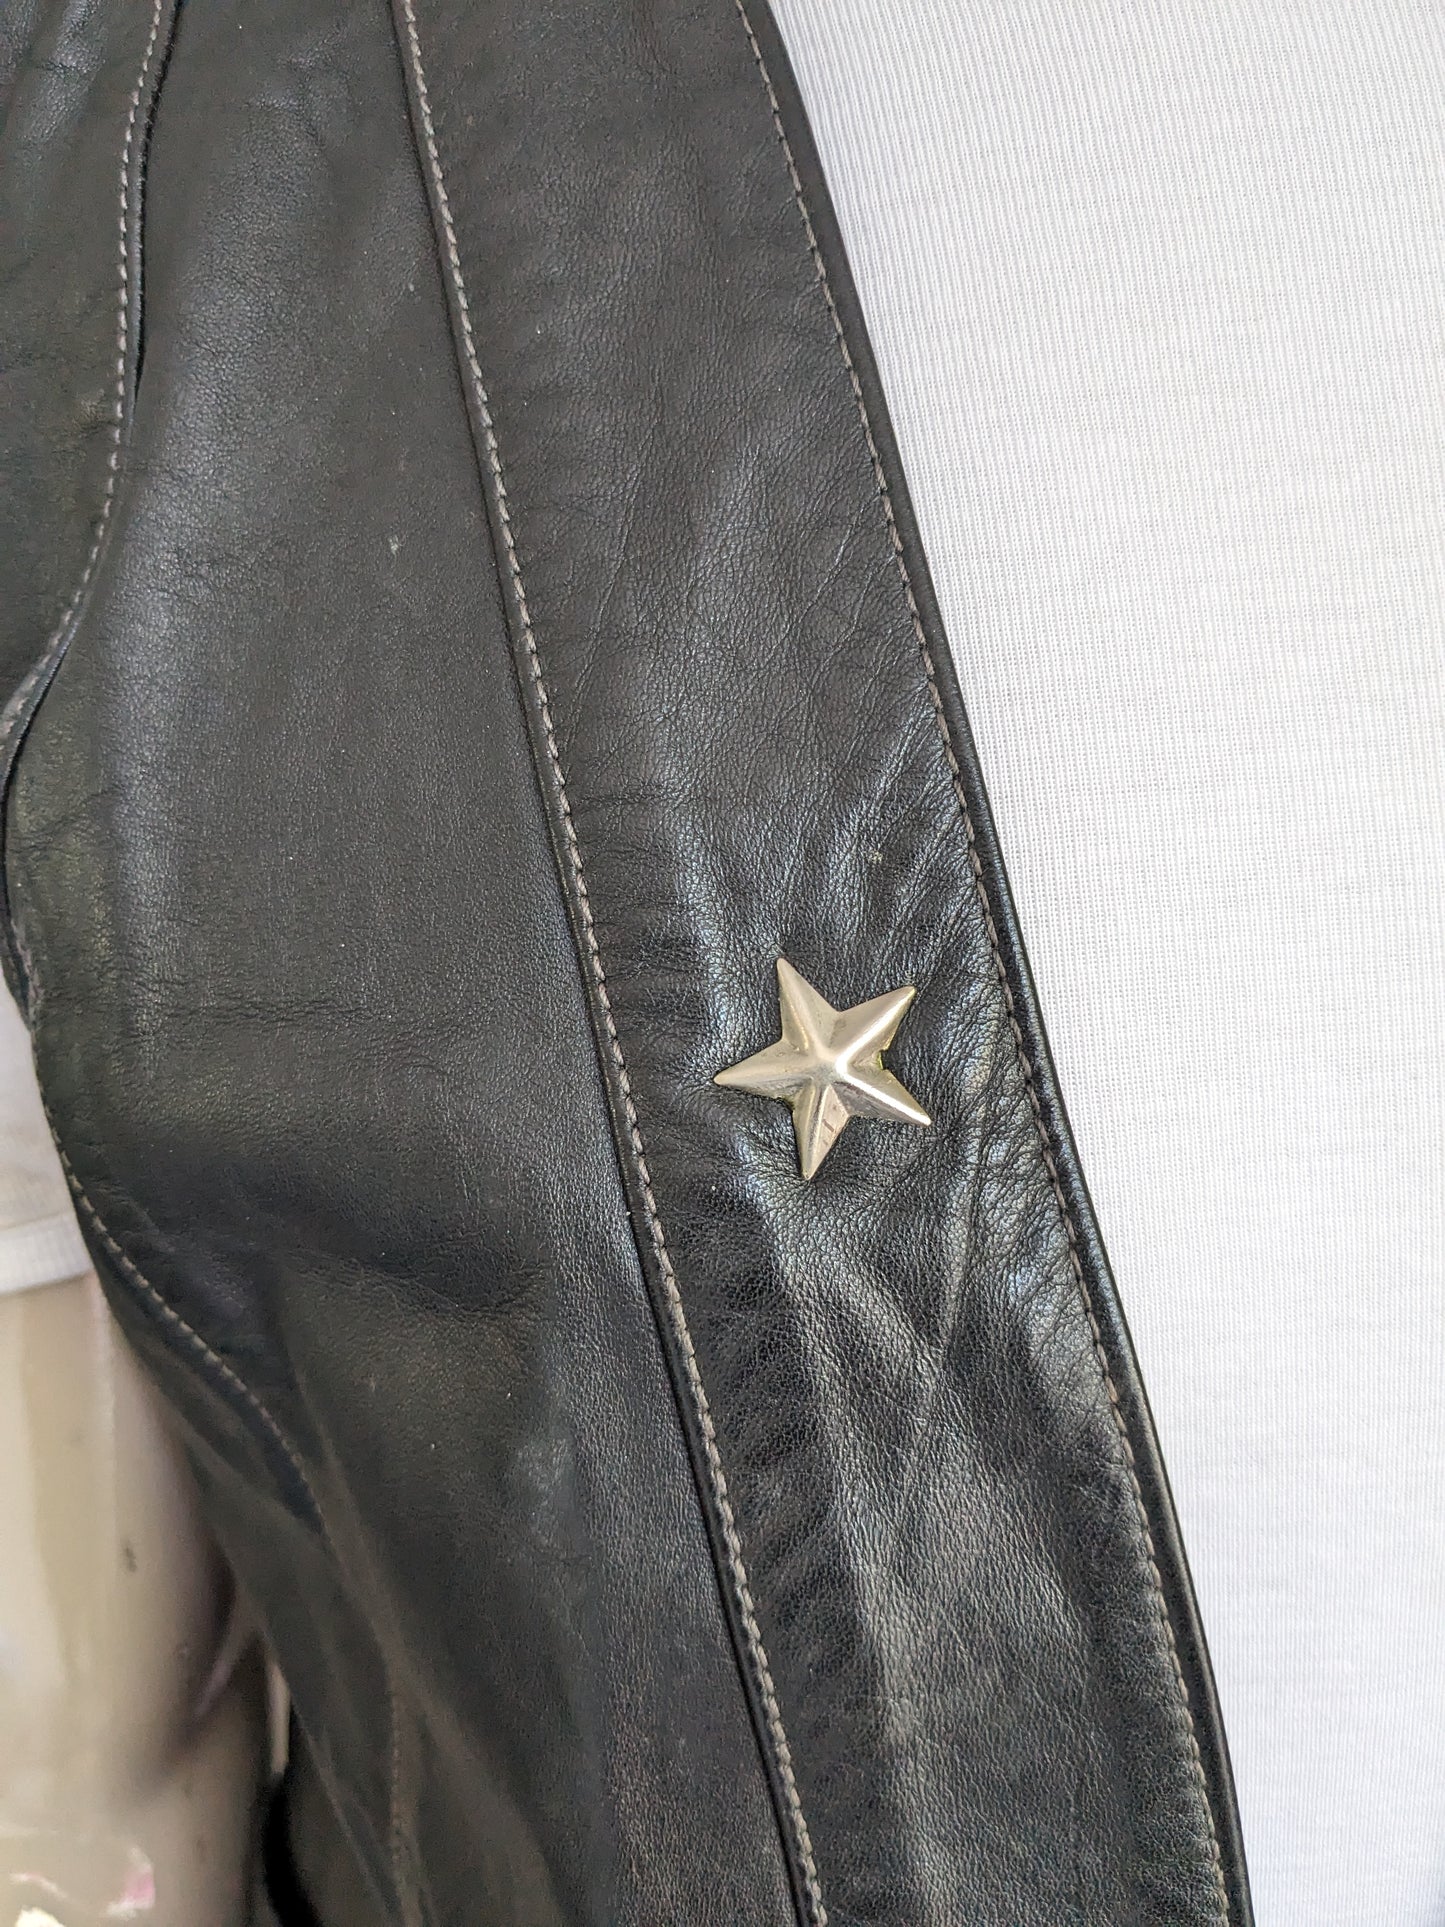 Chaleco de cuero sin cierre. Color negro con estrella de color plateado. Tamaño M / L.